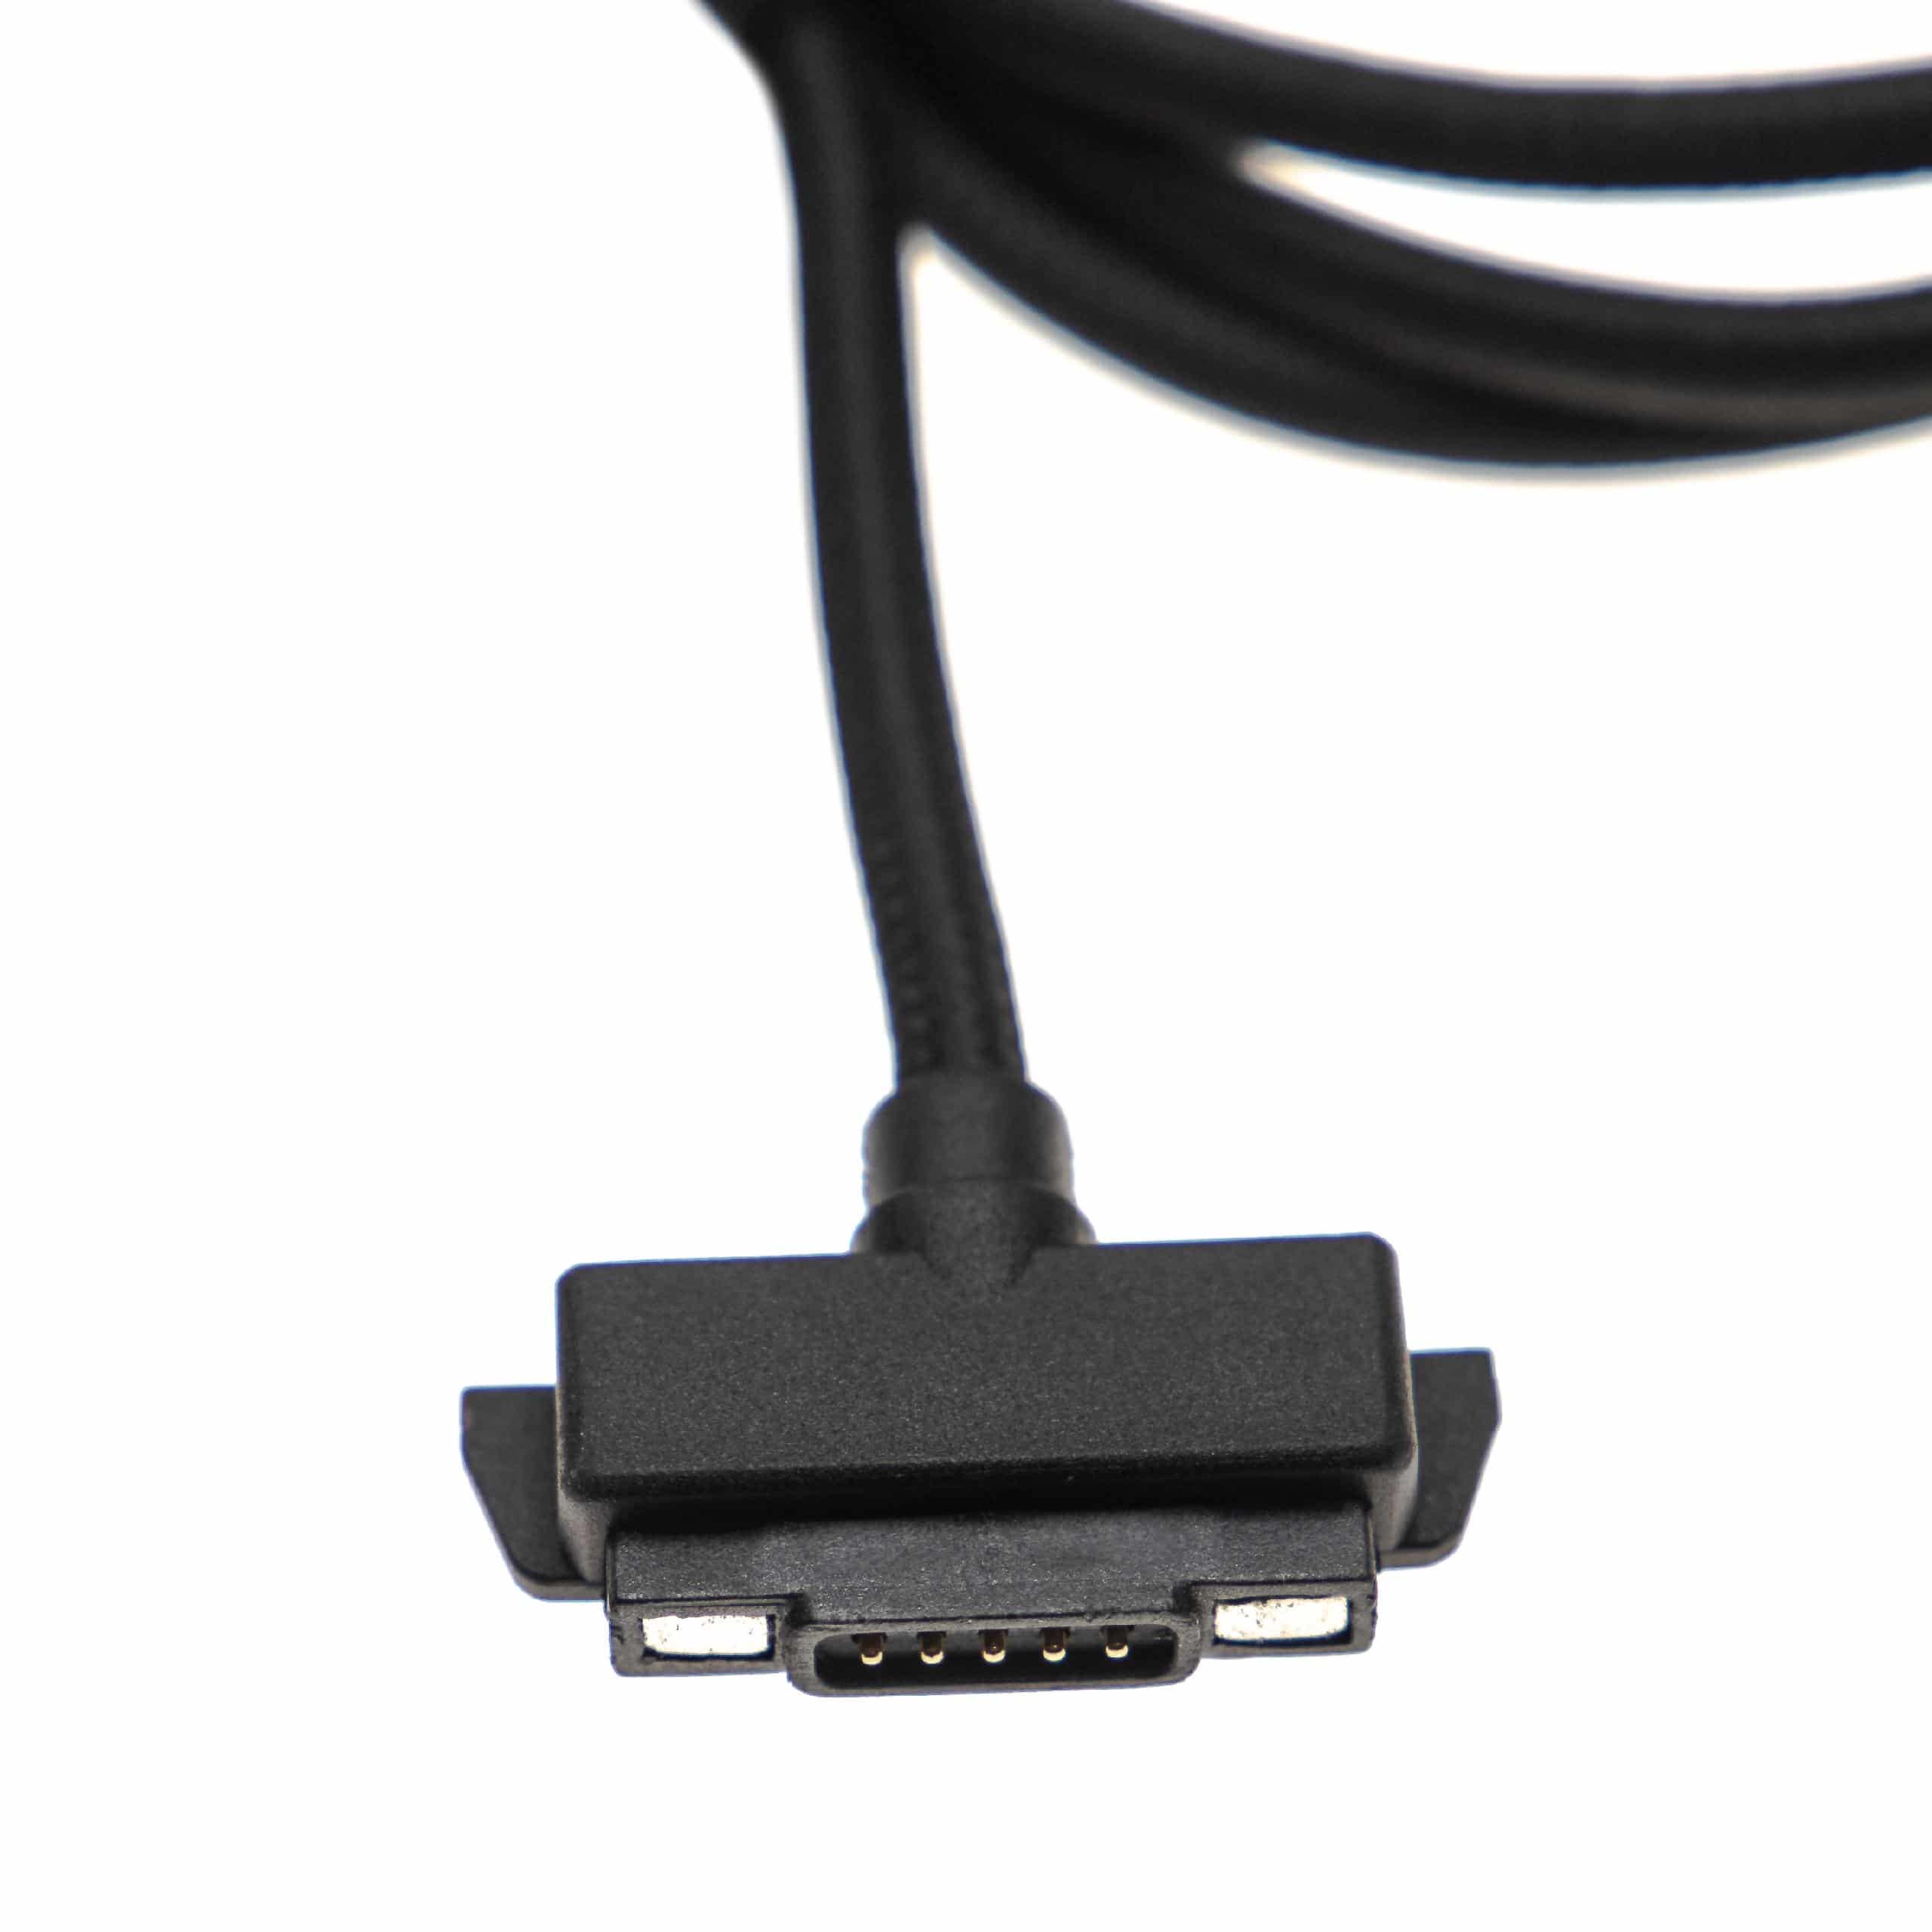 Cable de carga USB para móviles, smartphones Sonim XP6 - magnético